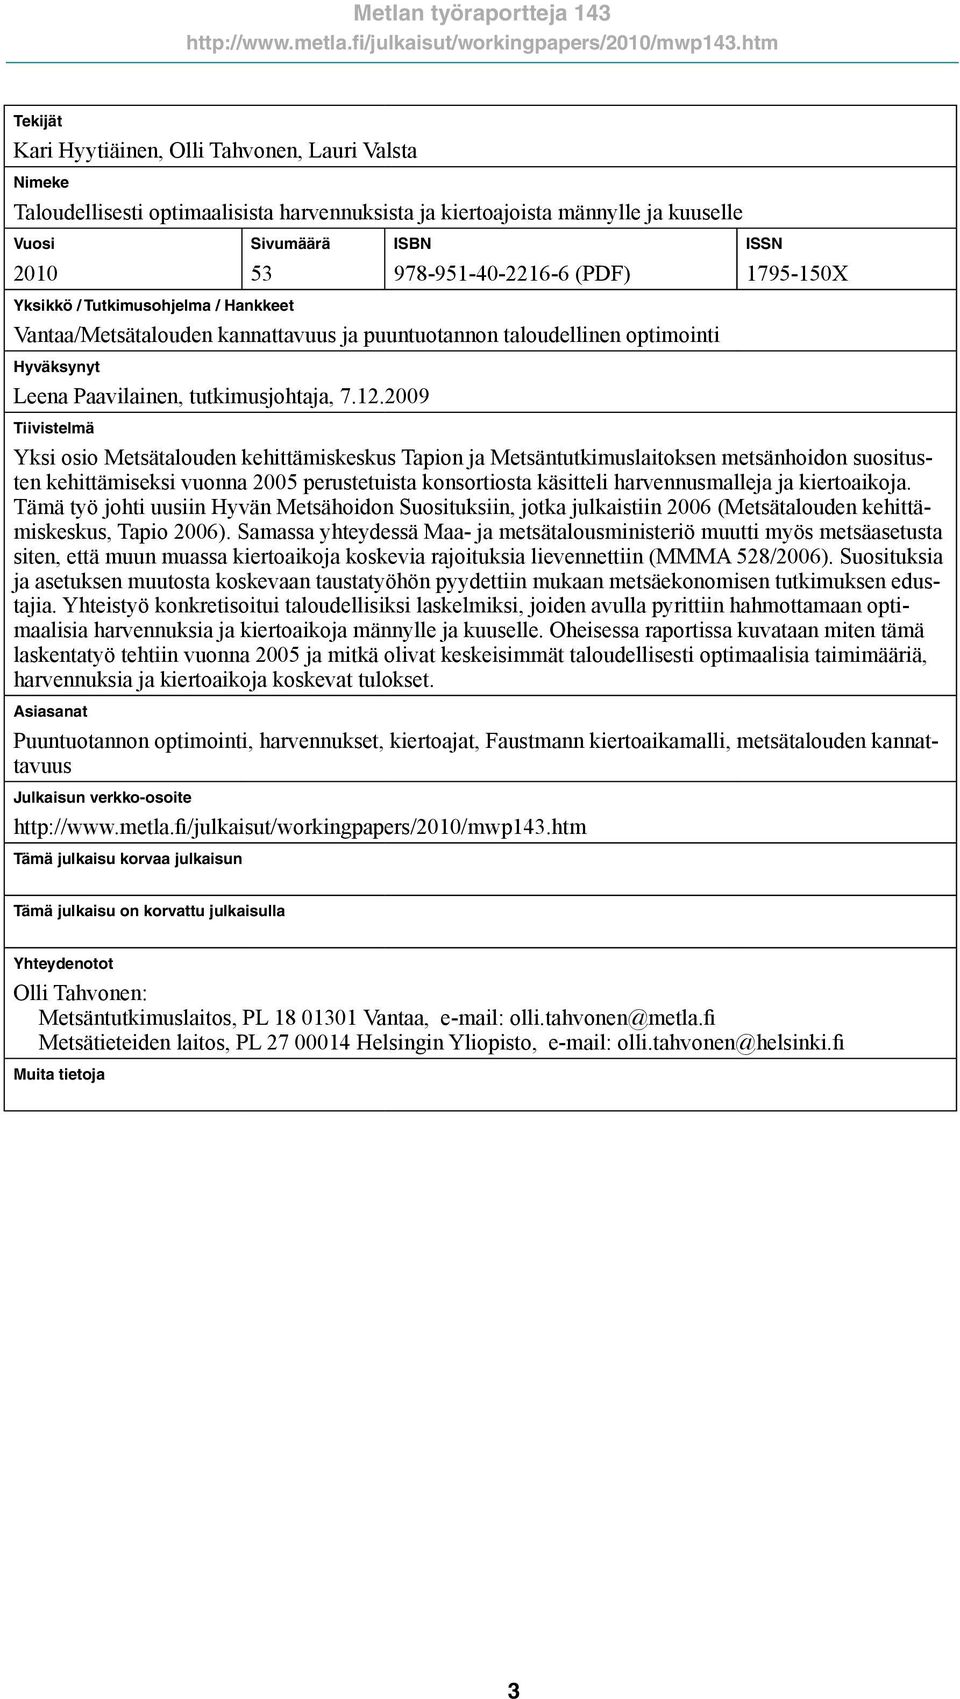 Hankkeet ISBN 978-951-4-2216-6 (PDF) Vantaa/Metsätalouden kannattavuus ja puuntuotannon taloudellinen optimointi Hyväksynyt Leena Paavilainen, tutkimusjohtaja, 7.12.